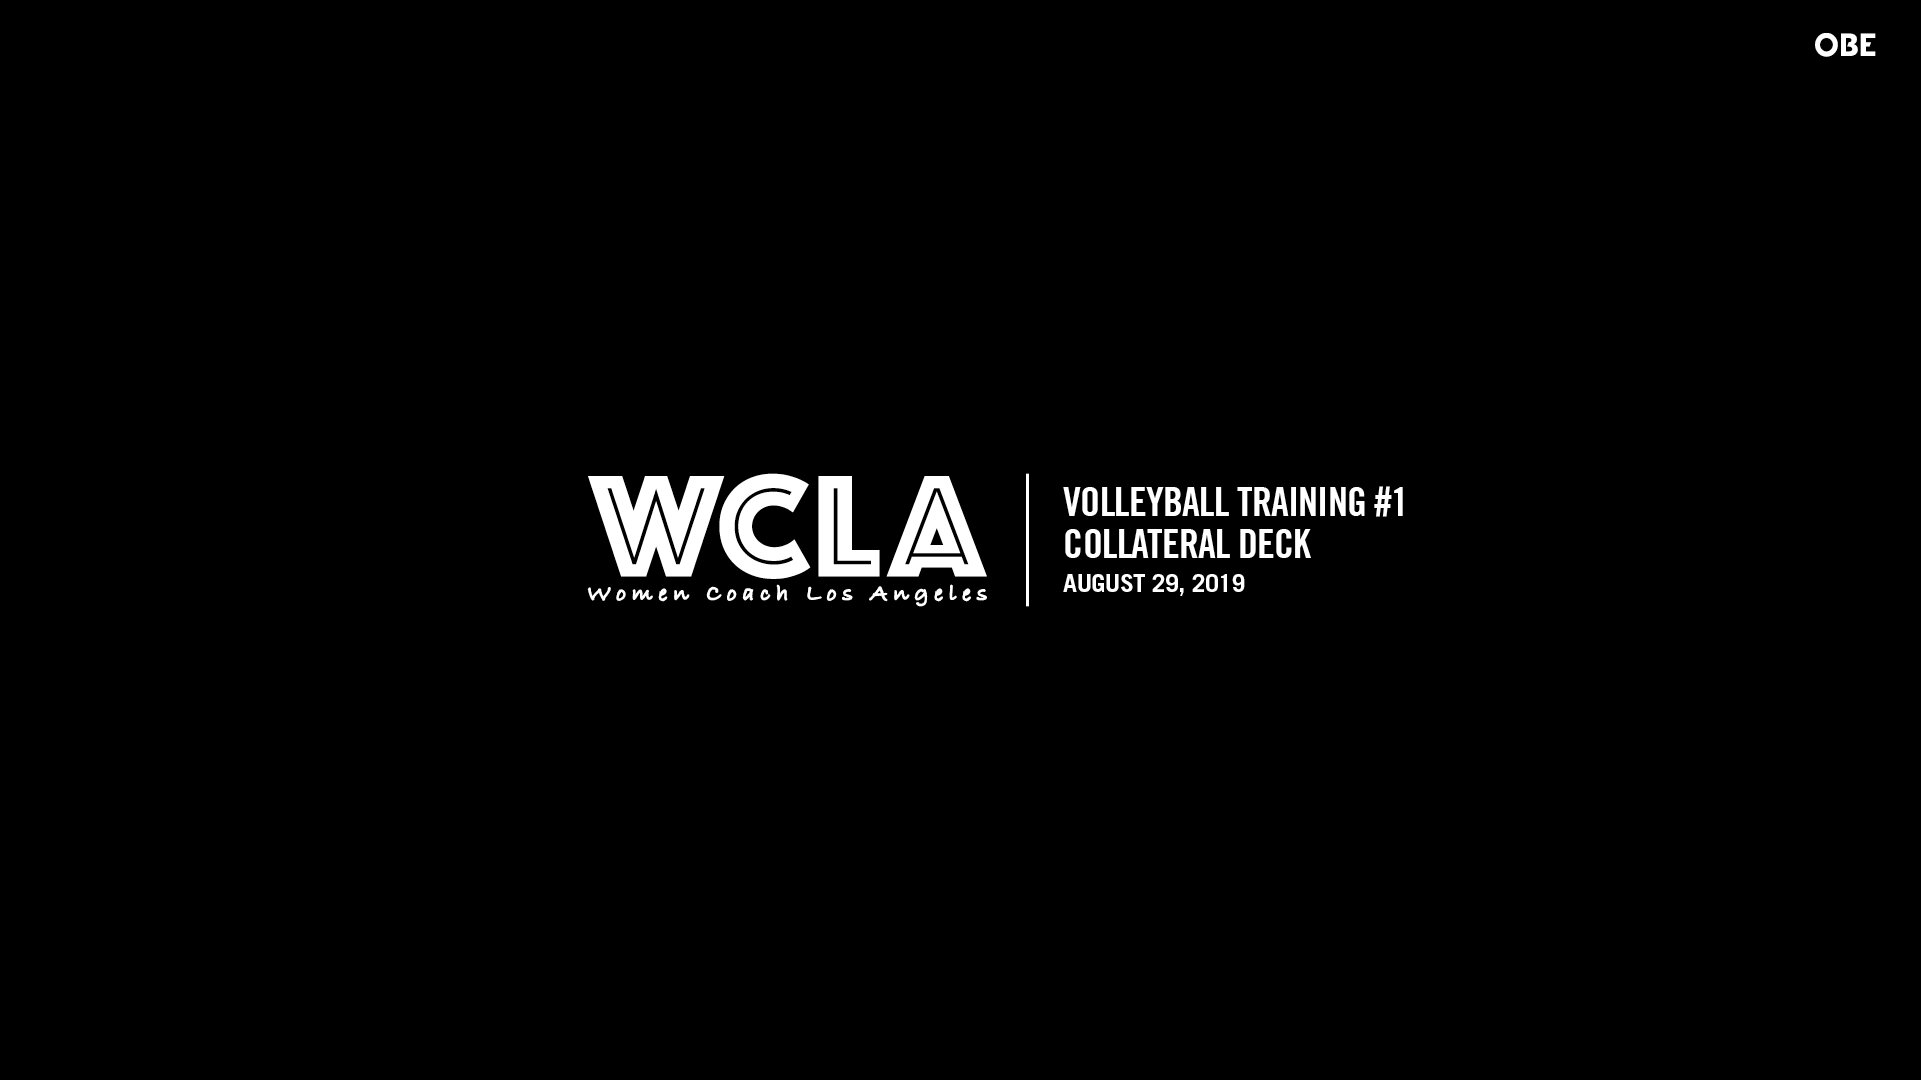 WCLA-190802-SoccerTraining2-CollateralDeck-R4_v11_FOR MY WEBSITE.jpg